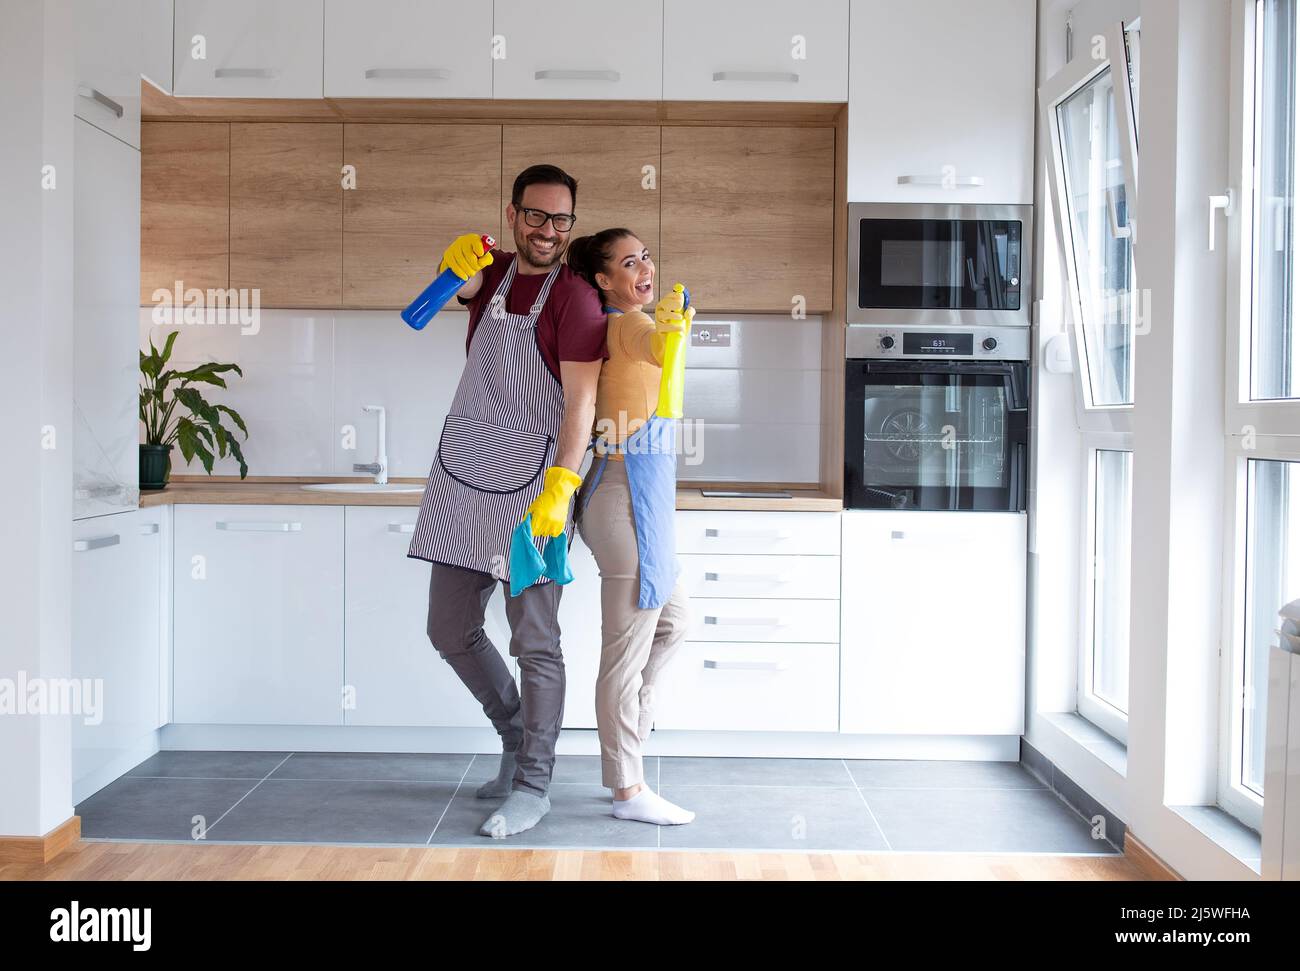 Junges Paar in der Küche mit Reinigungsmitteln, die Handschuhe tragen und ihre Aufgaben gemeinsam erledigen. Stockfoto